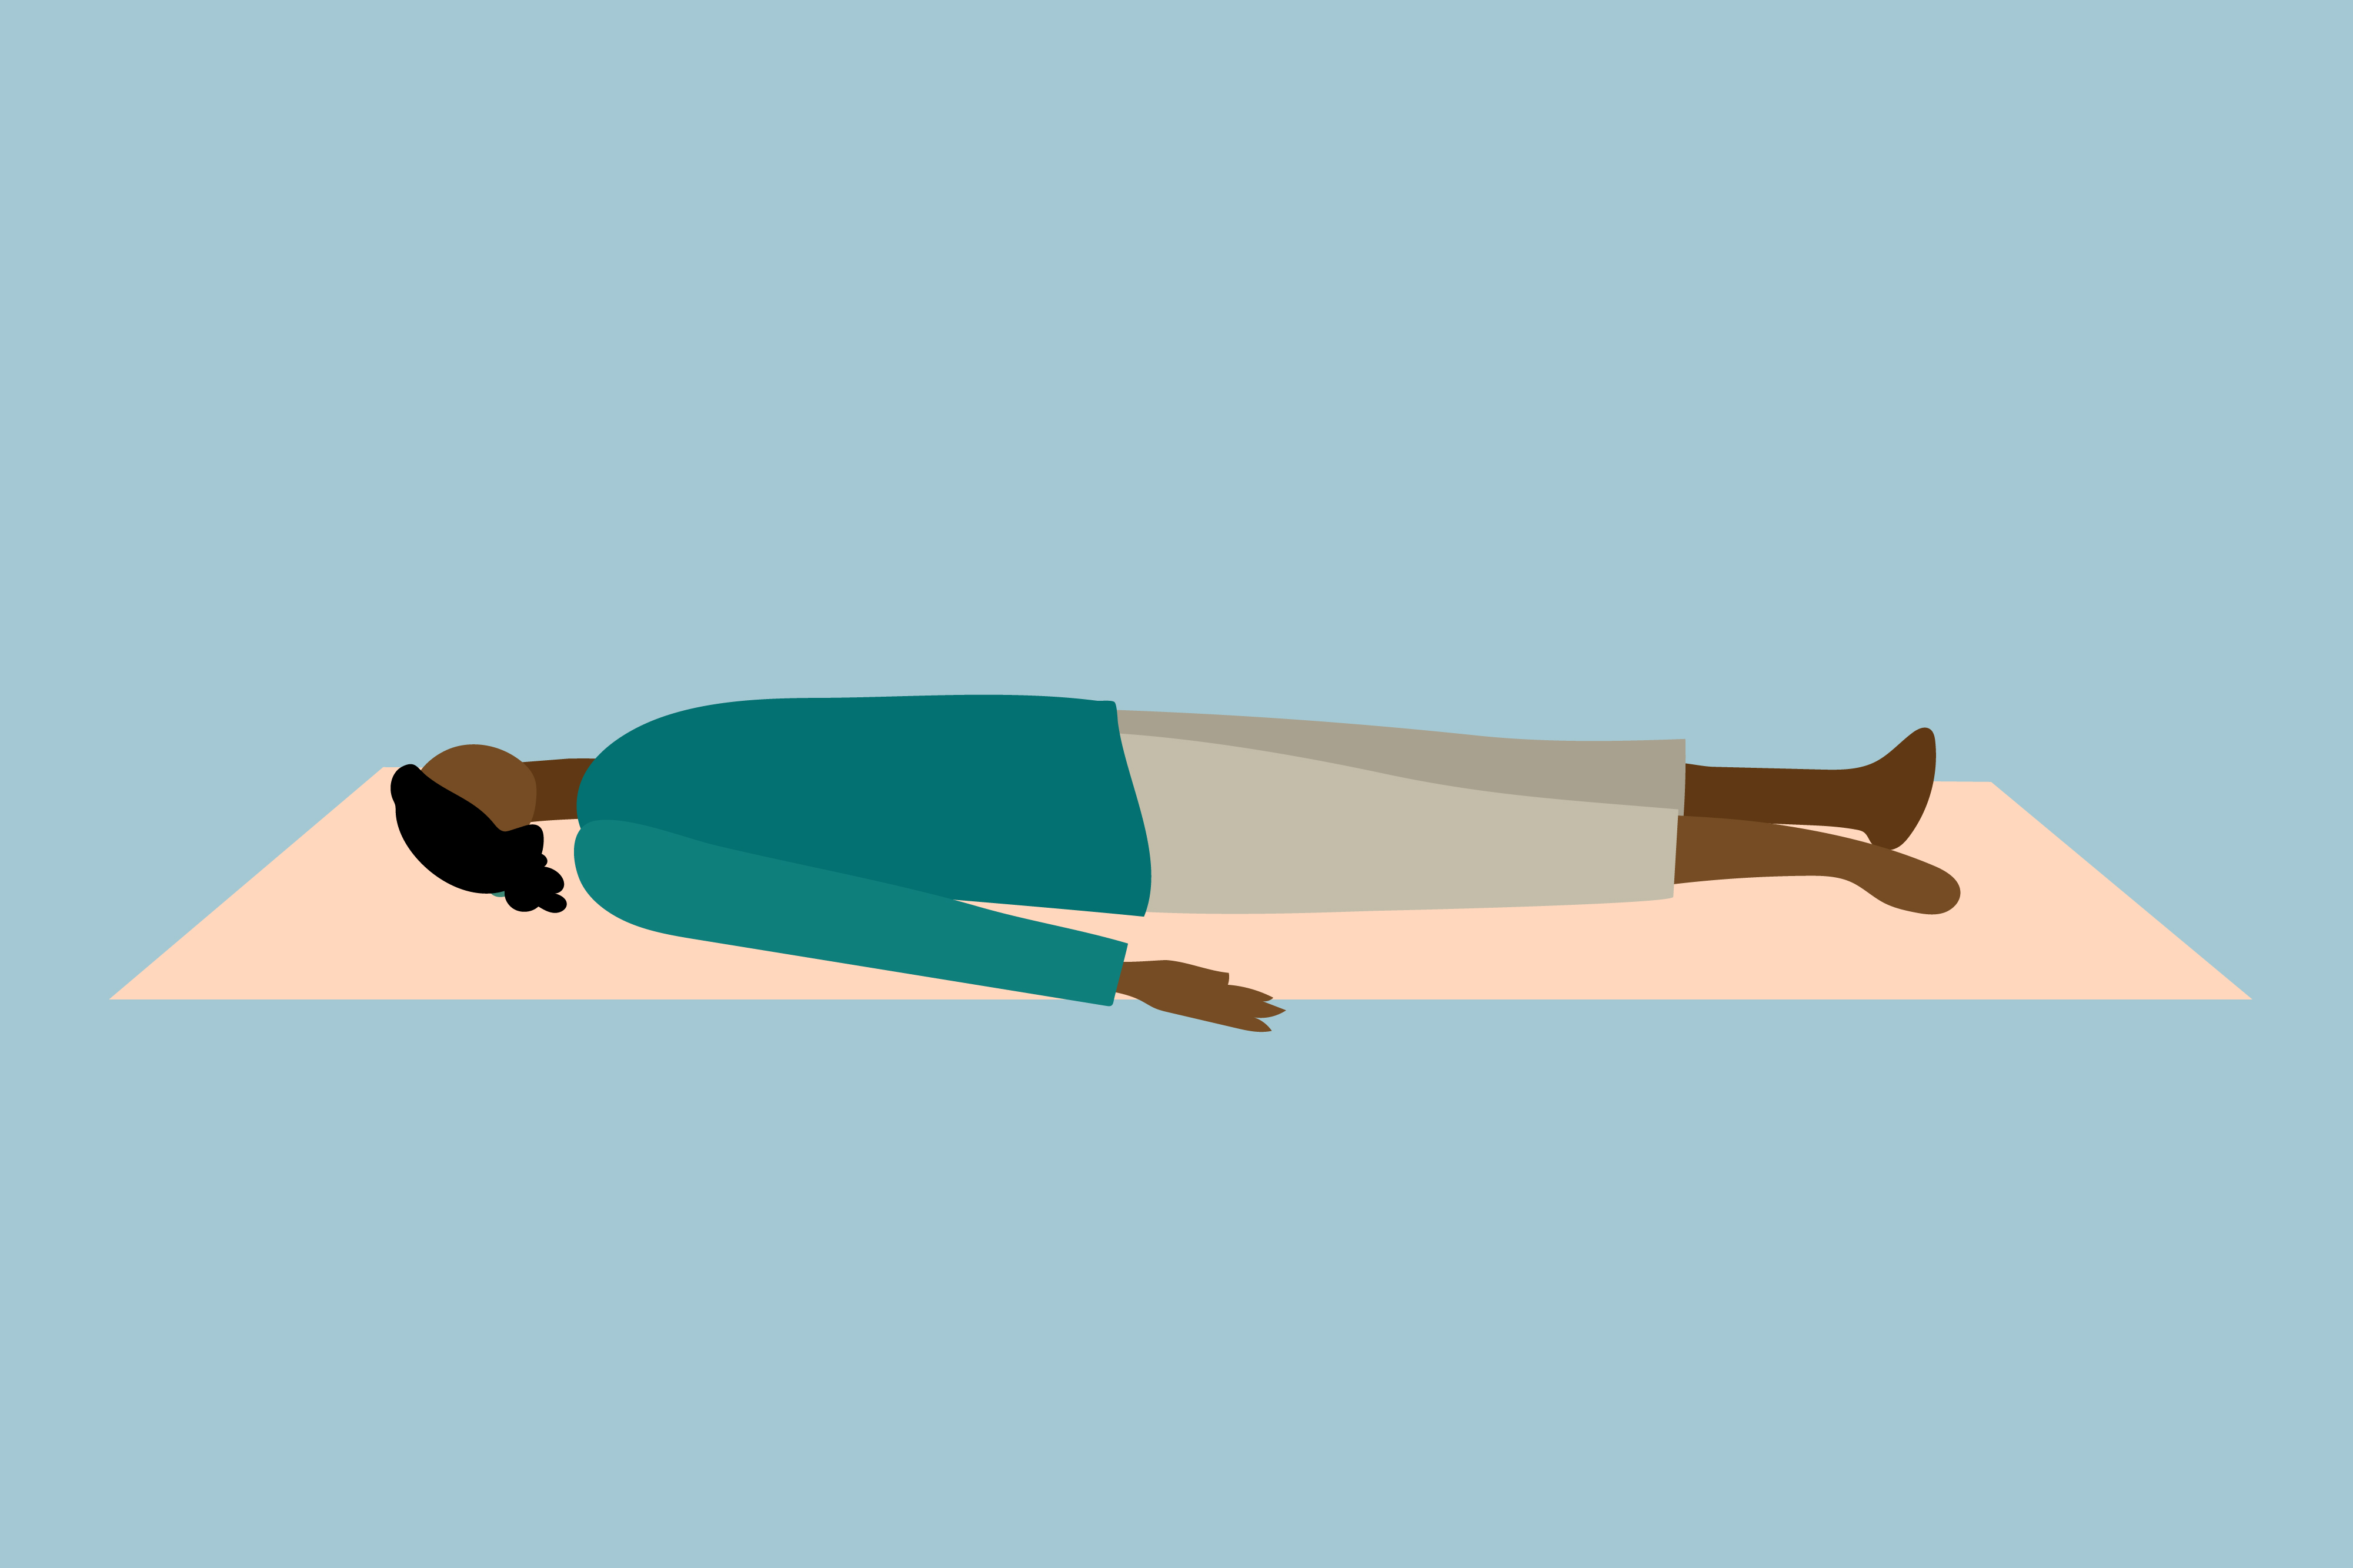 6 Yoga poses that can help relieve Headache | Yoga For Headache: सिरदर्द की  समस्या से हैं परेशान तो मिनटों में मिलेगा आराम, करें ये 6 योगासन